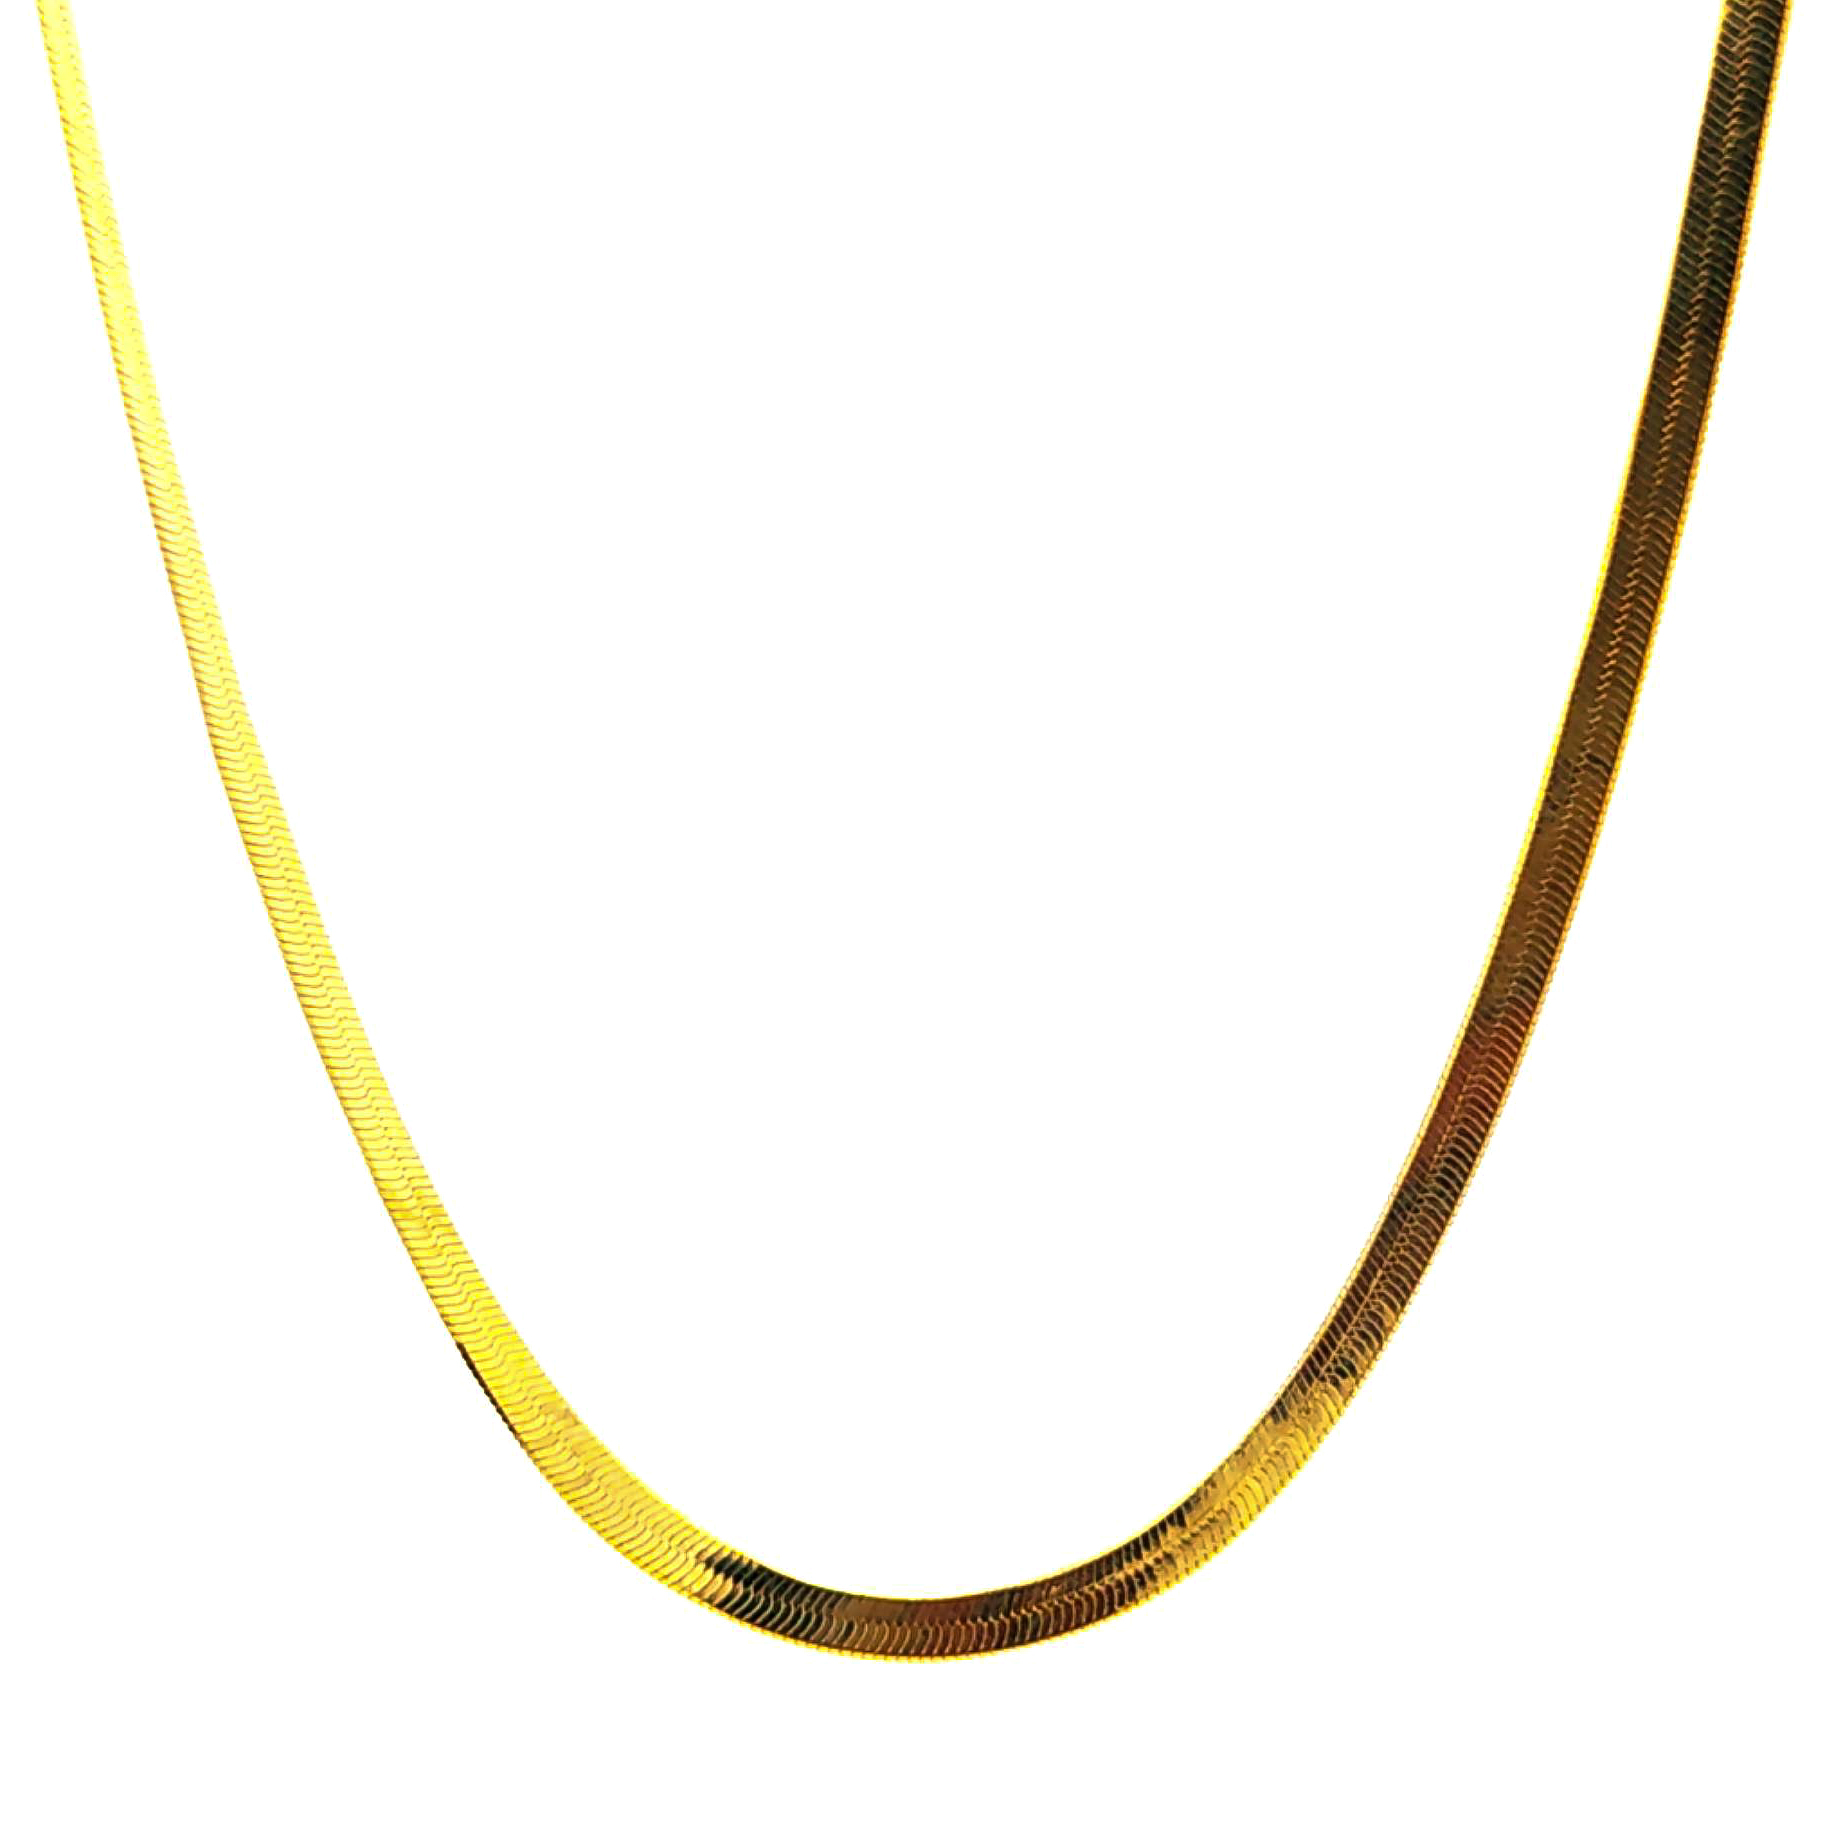 Cadena de oro amarillo 18k piel de serpiente de 2mm medida 45 cm, peso 6,96 gr 1